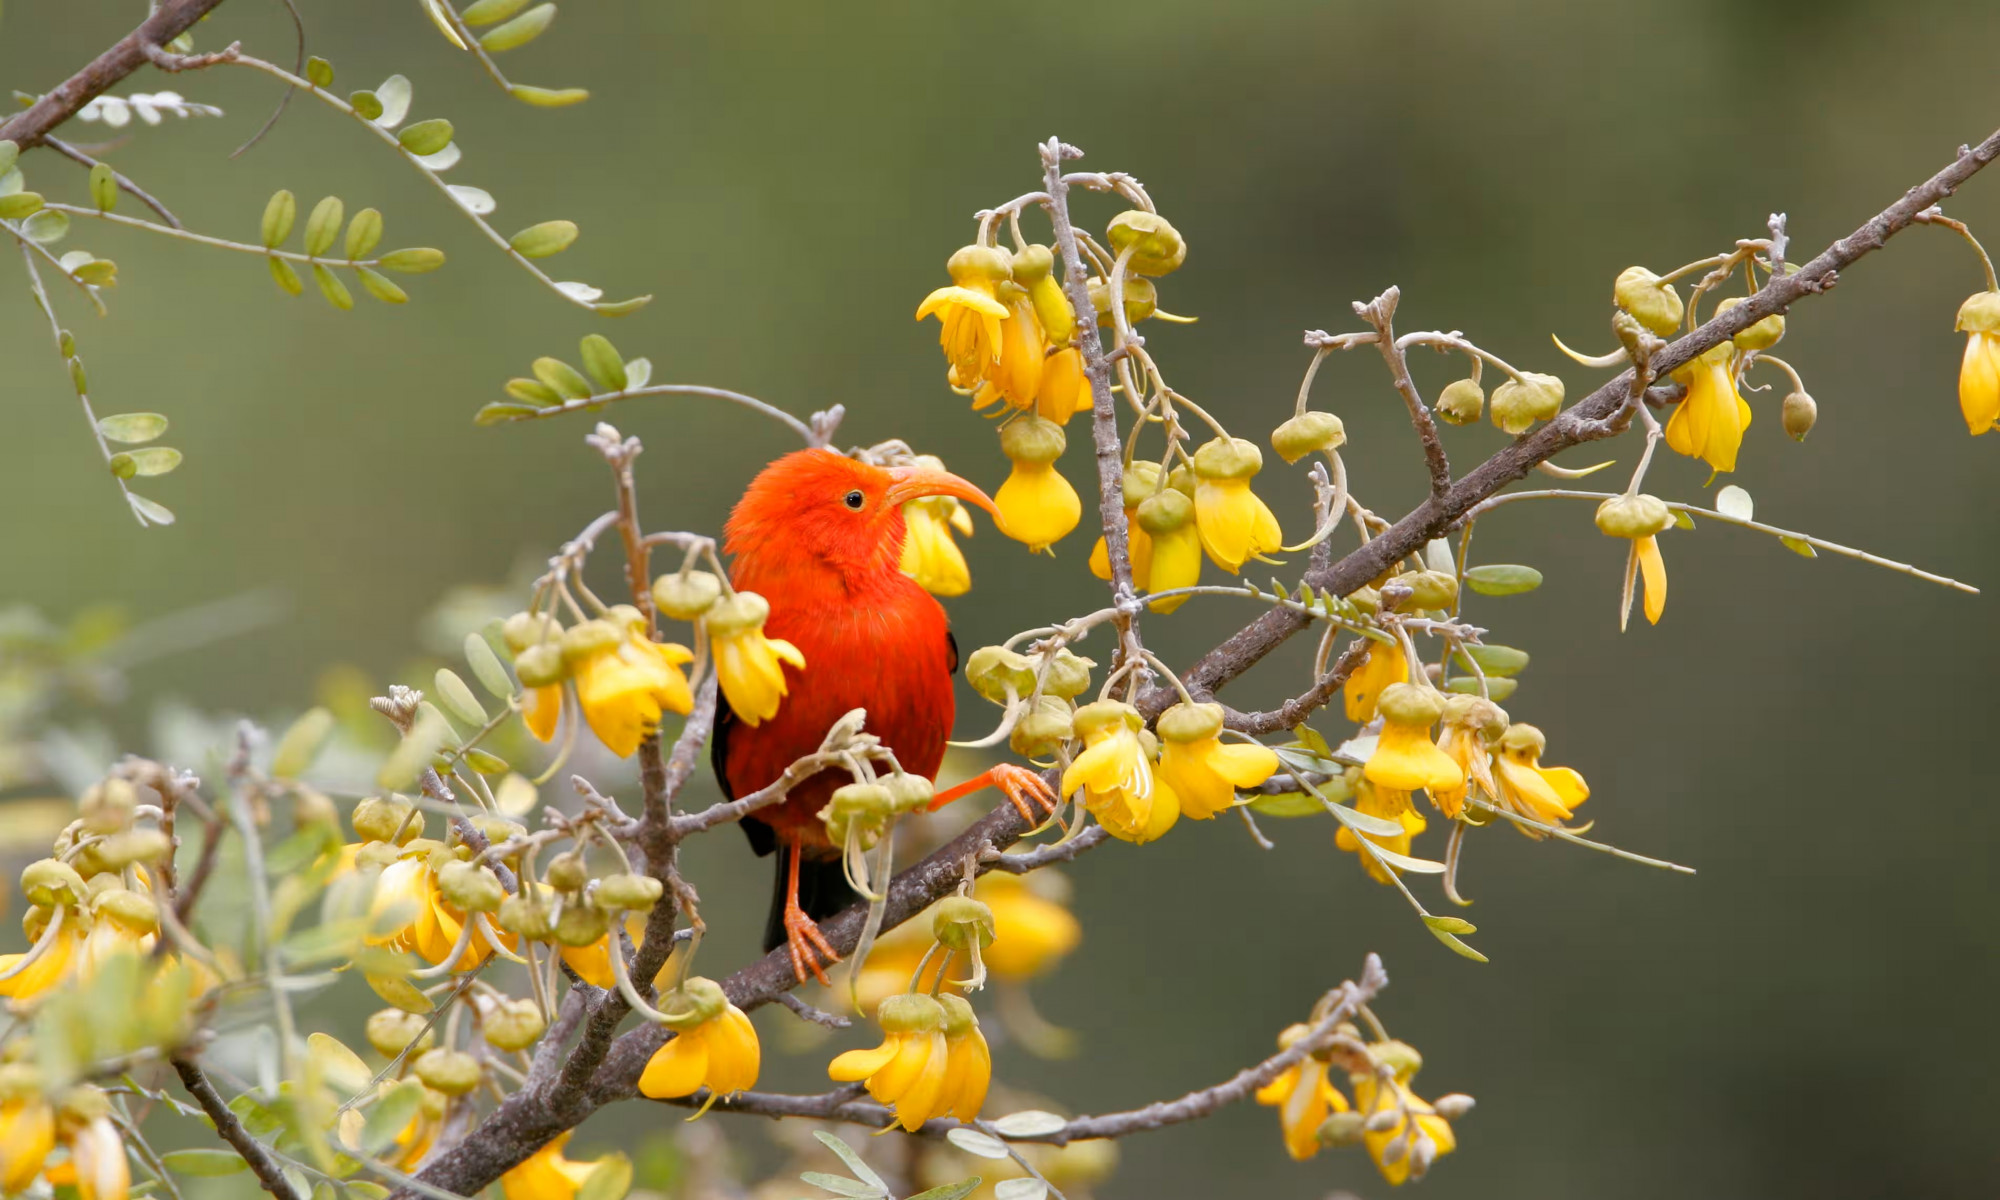 Loài chim honeycreeper đỏ tươi với tên gọi 'i'iwi có 90% nguy cơ tử vong nếu bị muỗi nhiễm bệnh sốt rét đốt - Ảnh: Alamy